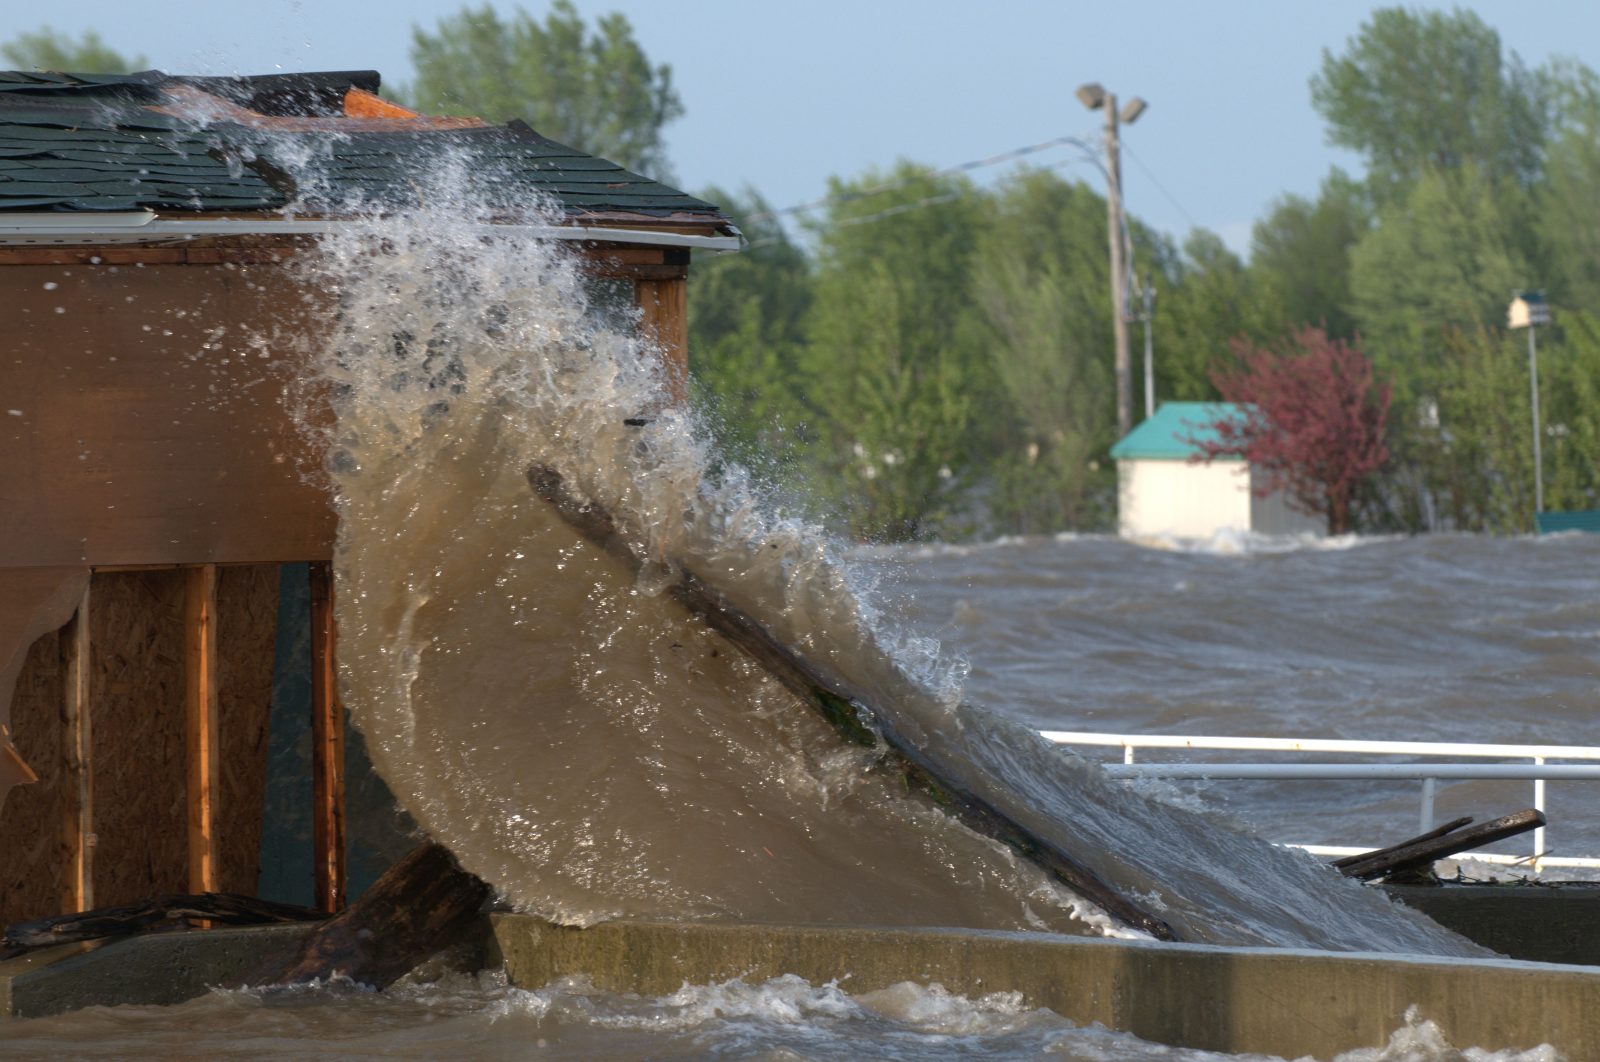 La Commission mixte publie un rapport intérimaire sur les causes et les impacts des inondations